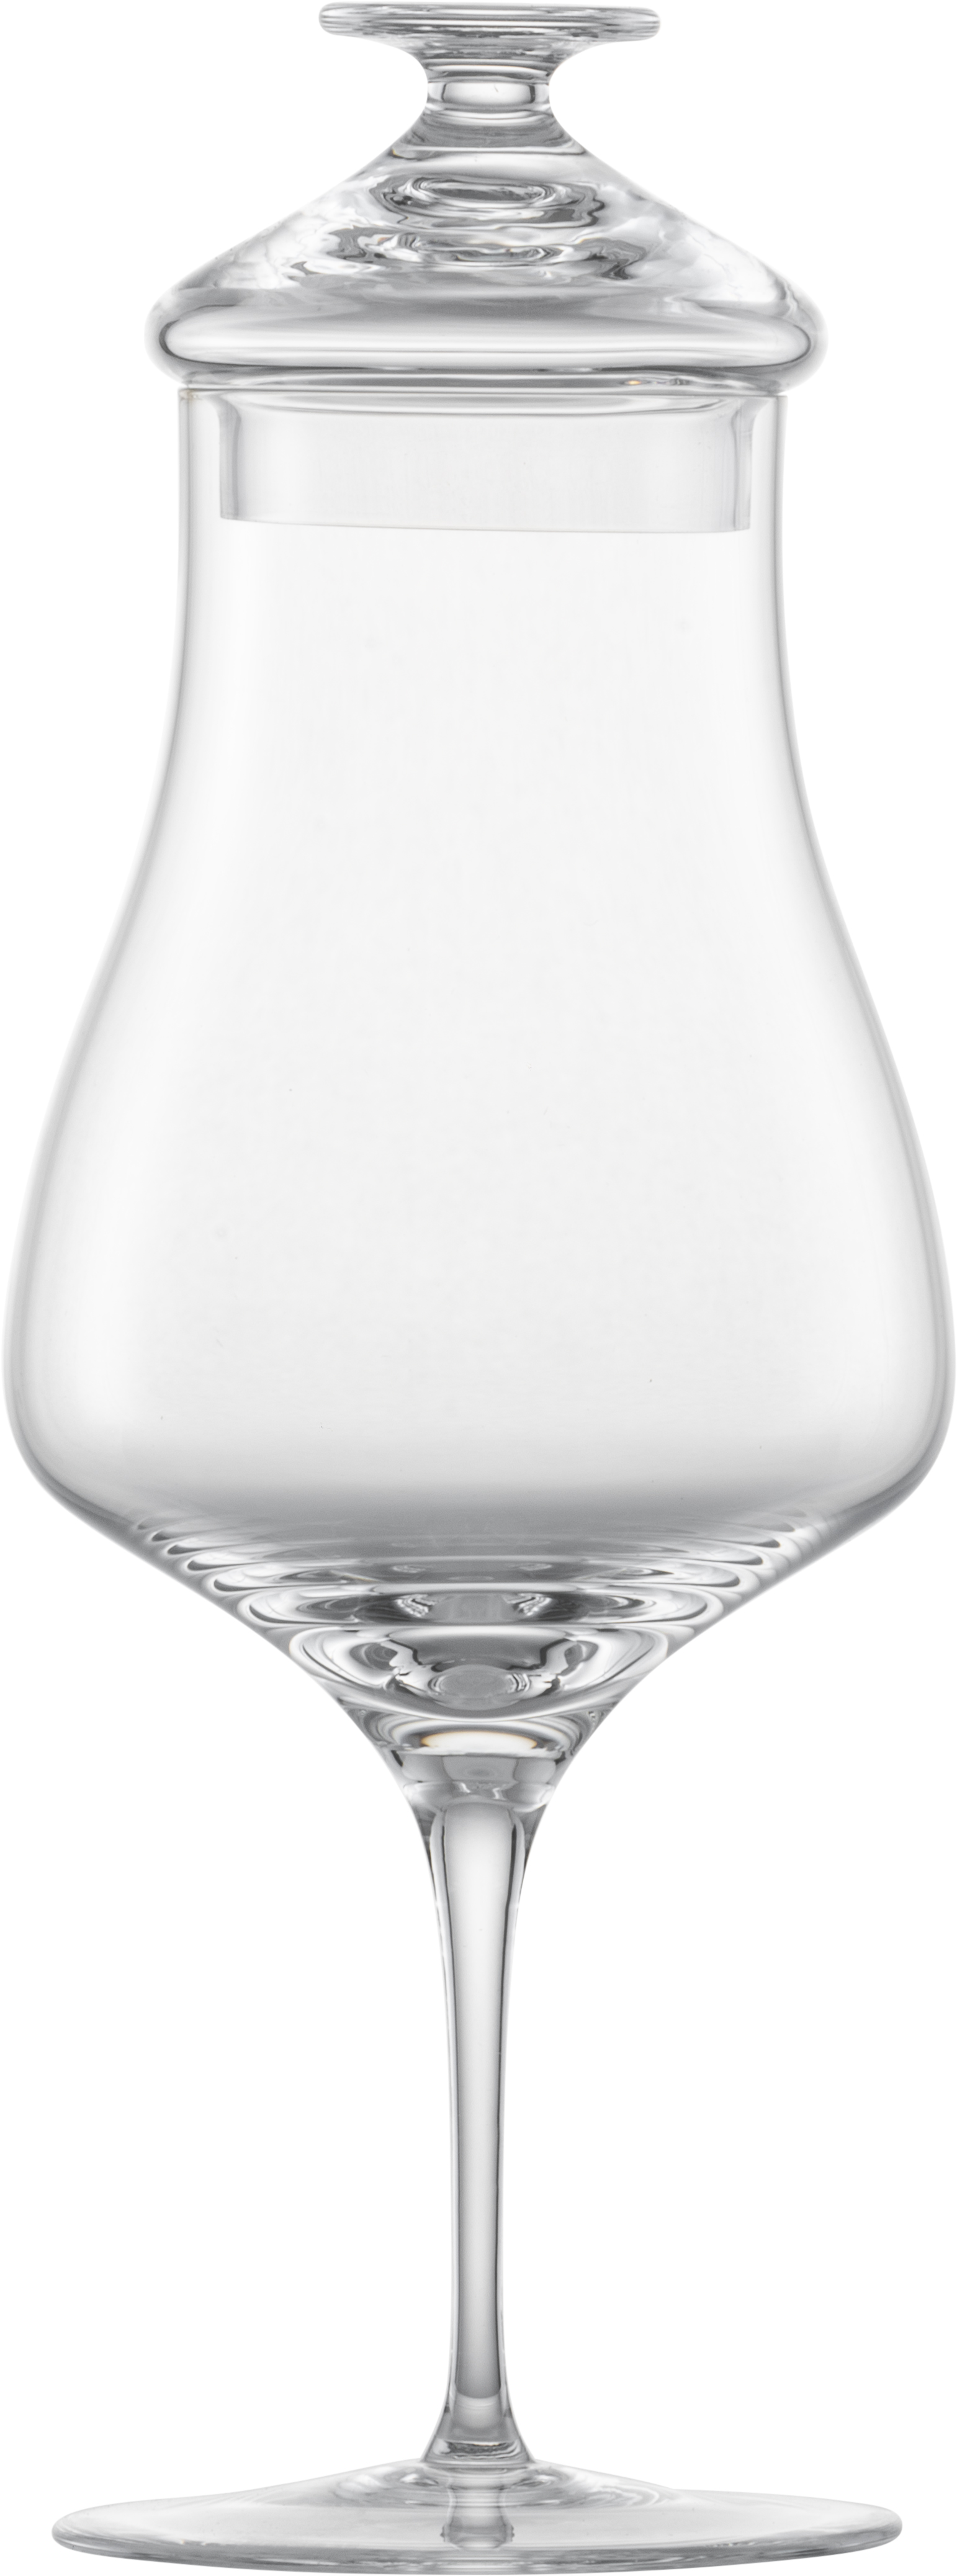 dichtbij Premier vitamine ZWIESEL GLAS Whisky Nosing Glas mit Deckel Alloro | ZWIESEL GLAS